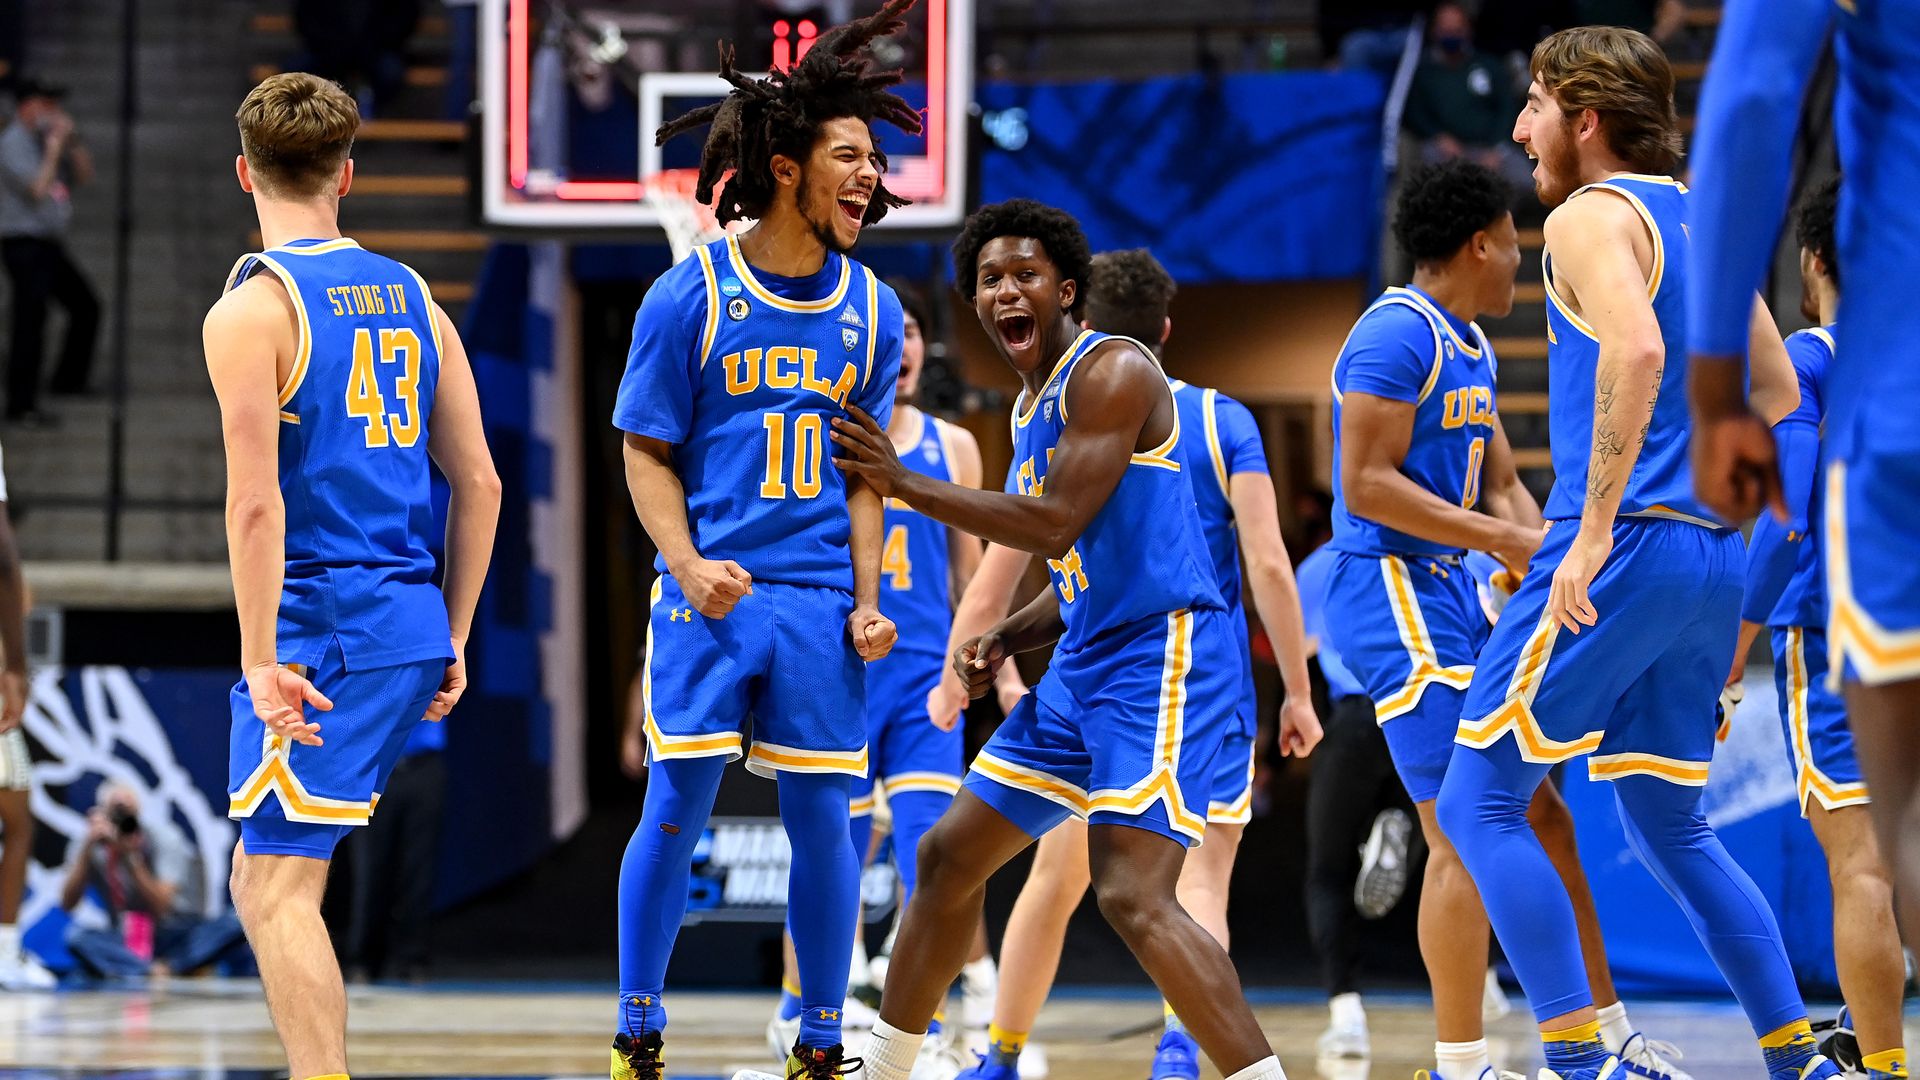 UCLA celebrating